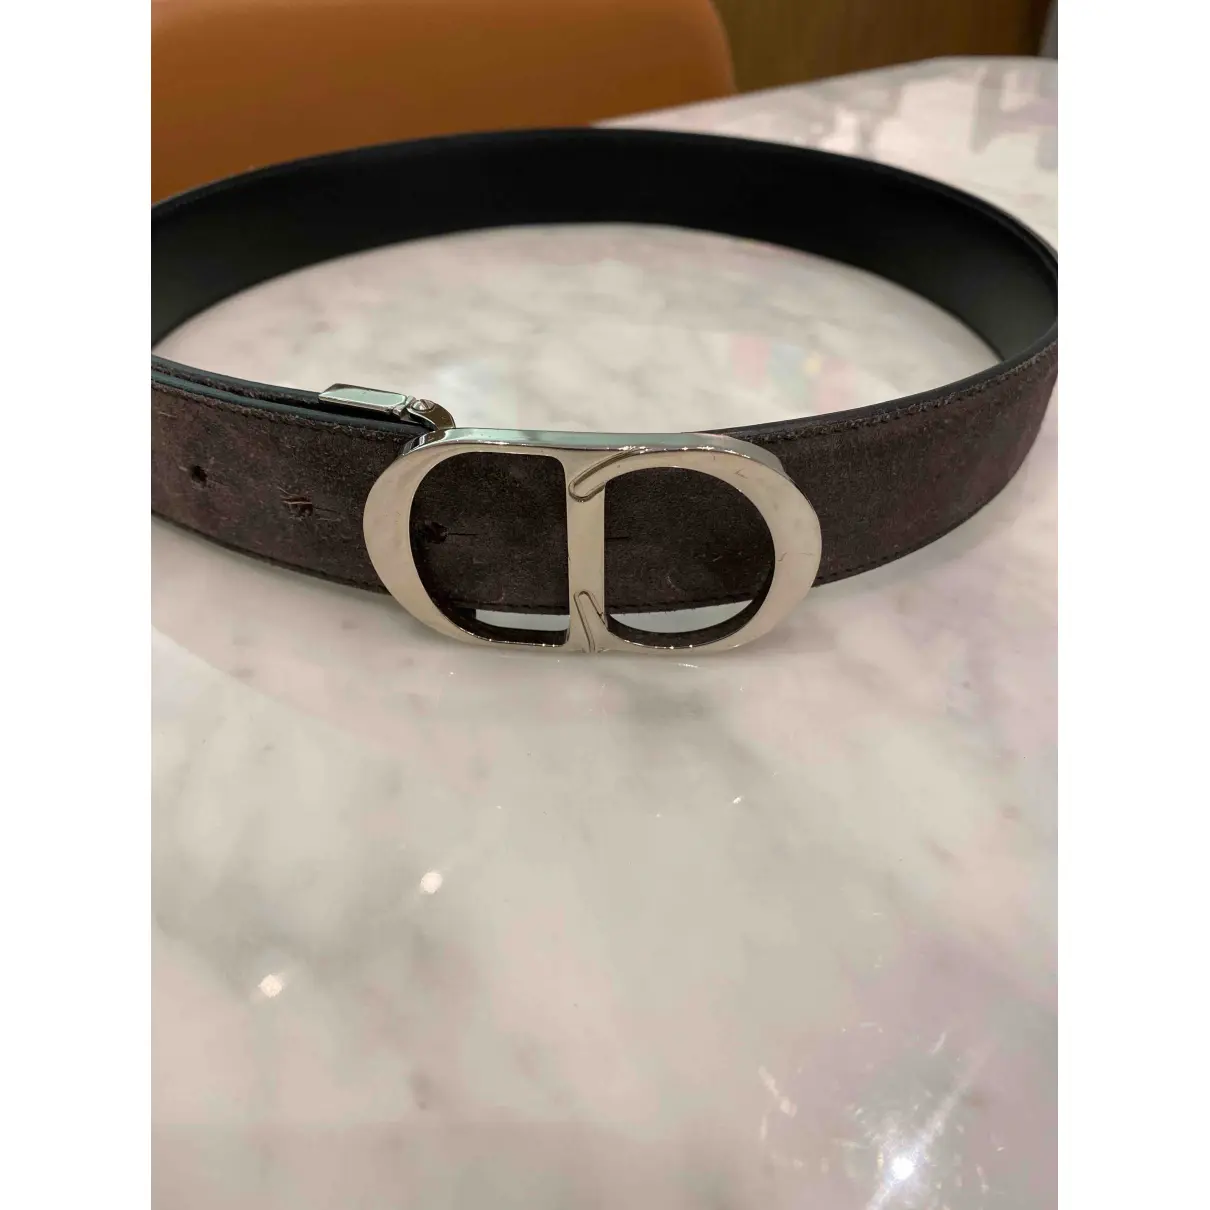 Buy Christian Dior Leather belt online